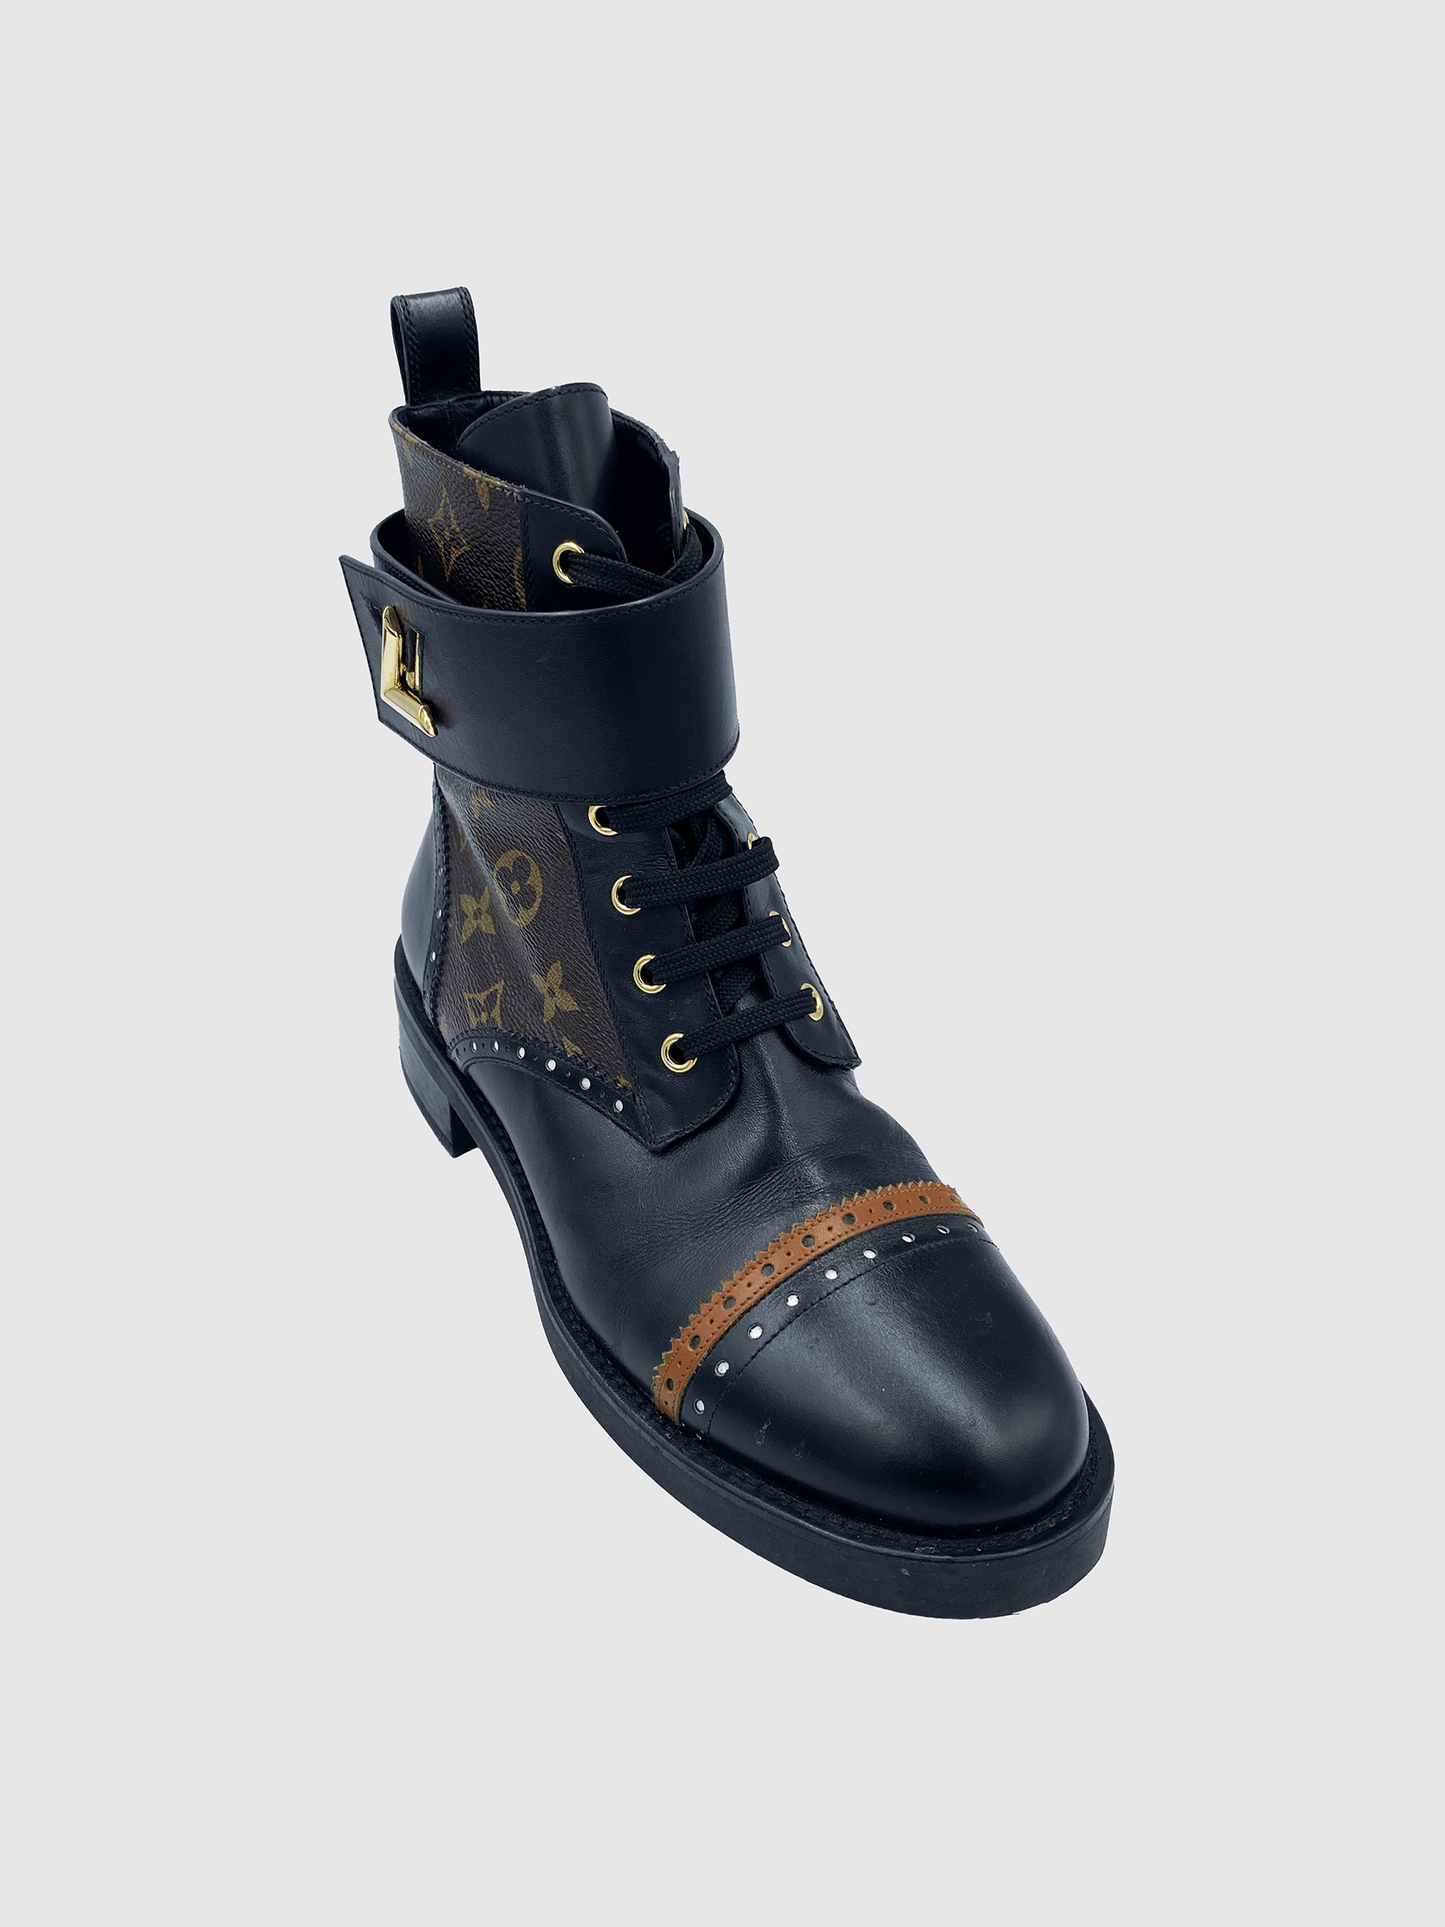 Louis Vuitton Monogram Rager Combat Boots - Size 40 - Second Nature Boutique